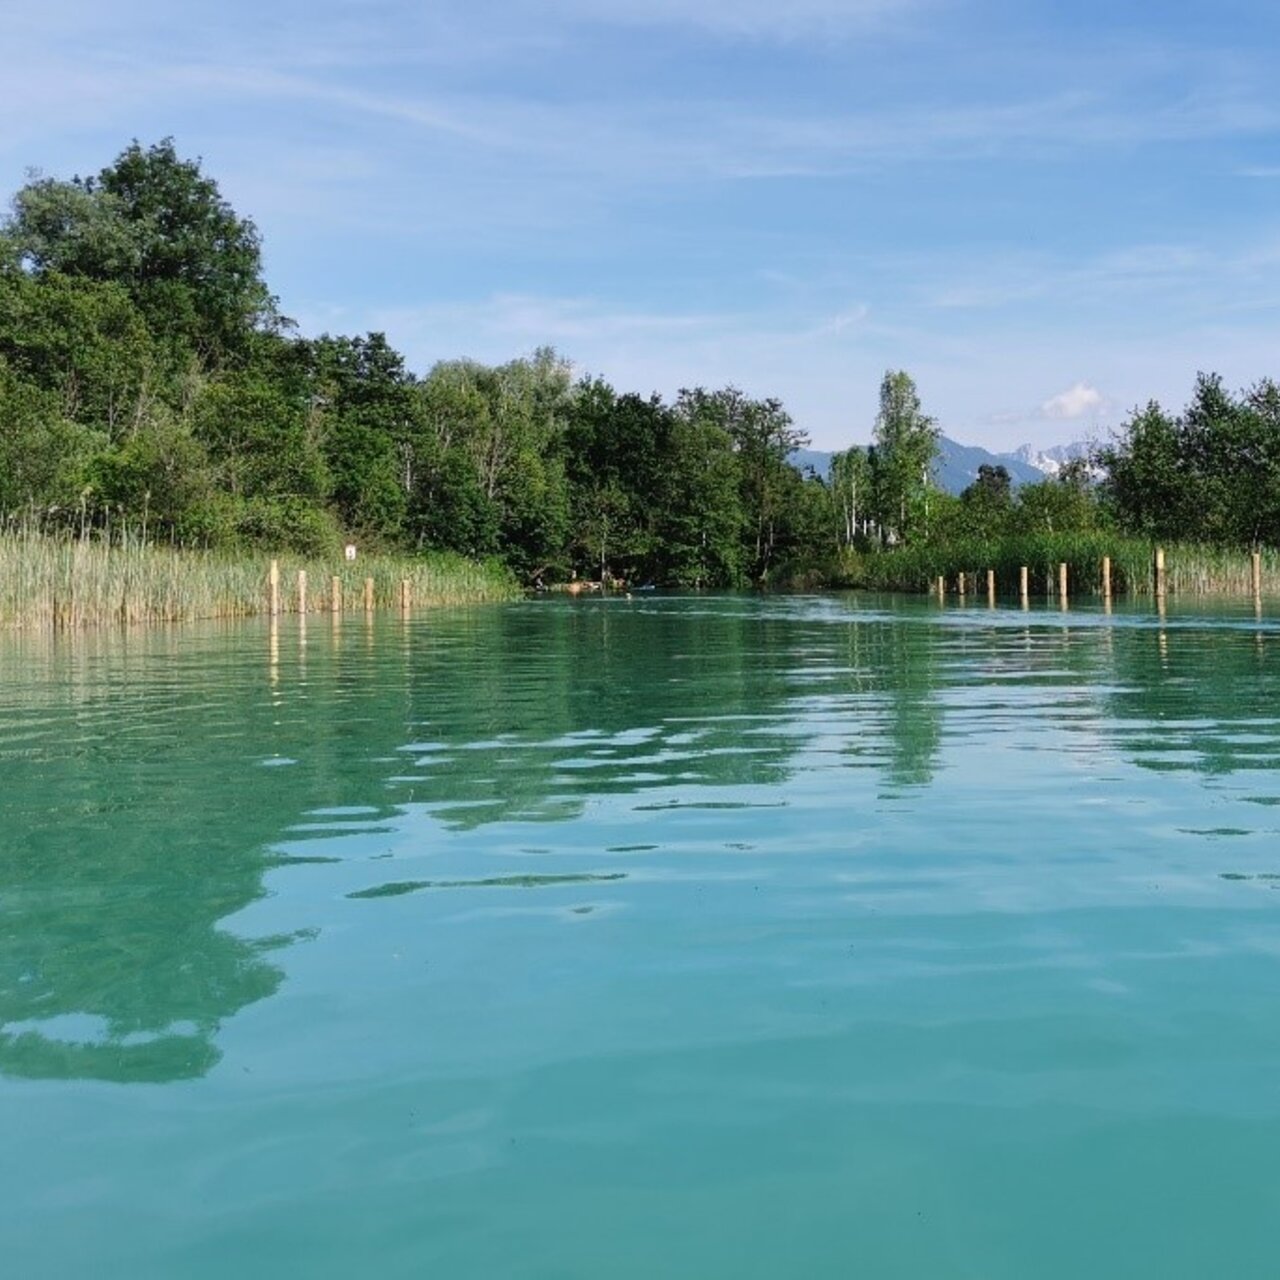 Der See selbst wurde noch 2015 als Oligotrophes Gewässer mit Armleuchteralgen eingestuft. Im Projekt City meets Nature – Lebensraumverbesserung für Moorfrosch & Co. wurden u.a. Abstandshalter zum Schutz der Uferzone gesetzt.